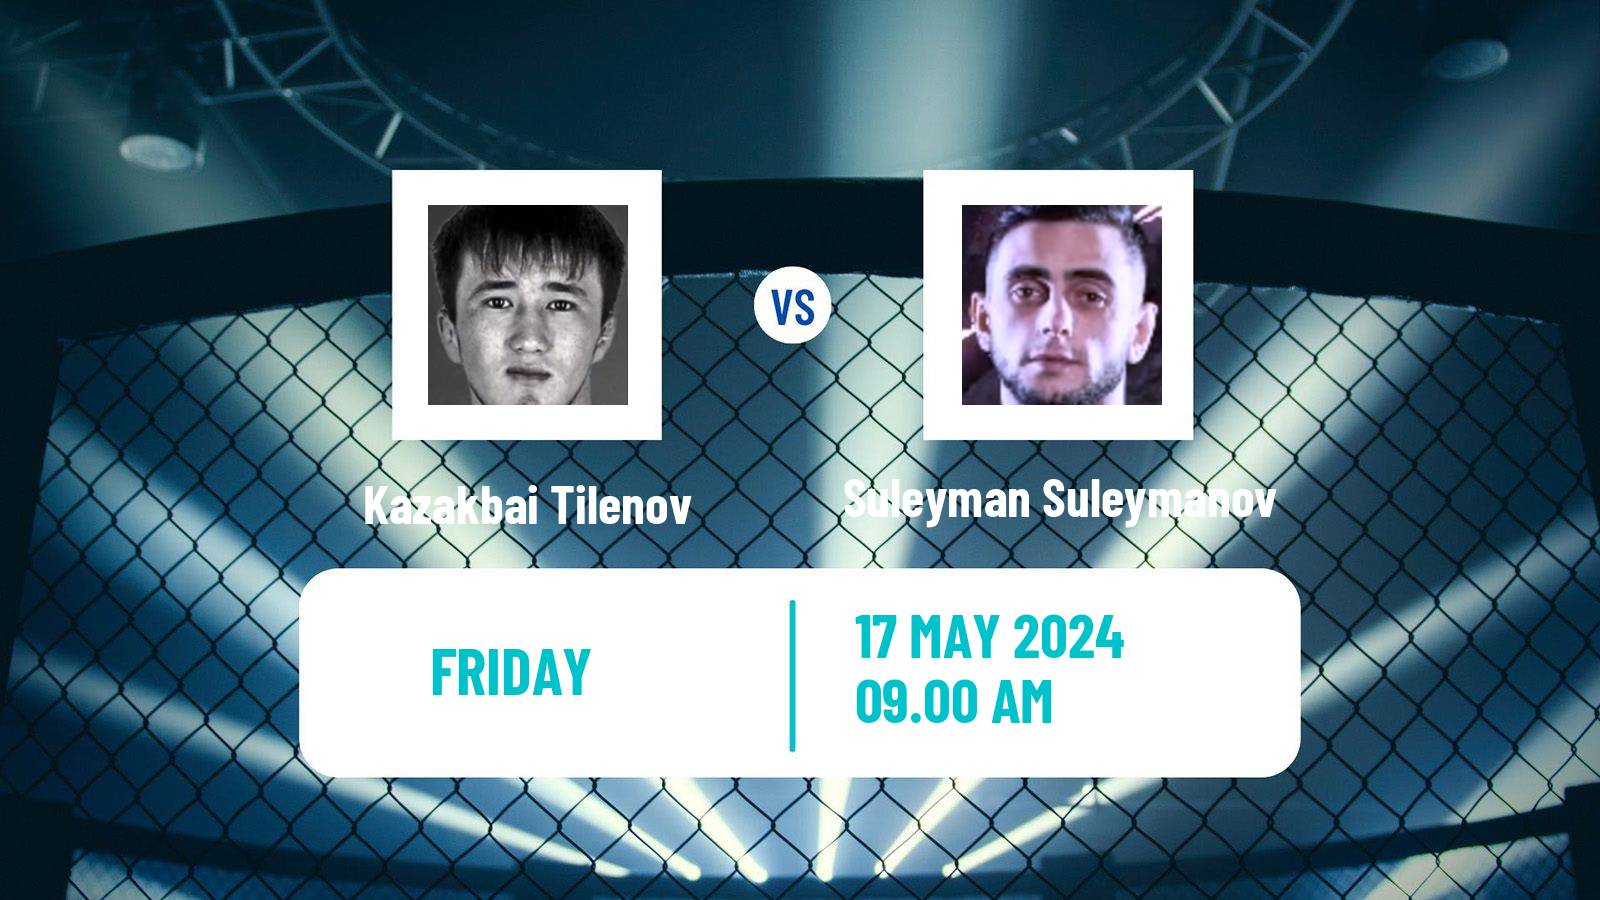 MMA Bantamweight One Championship Men Kazakbai Tilenov - Suleyman Suleymanov